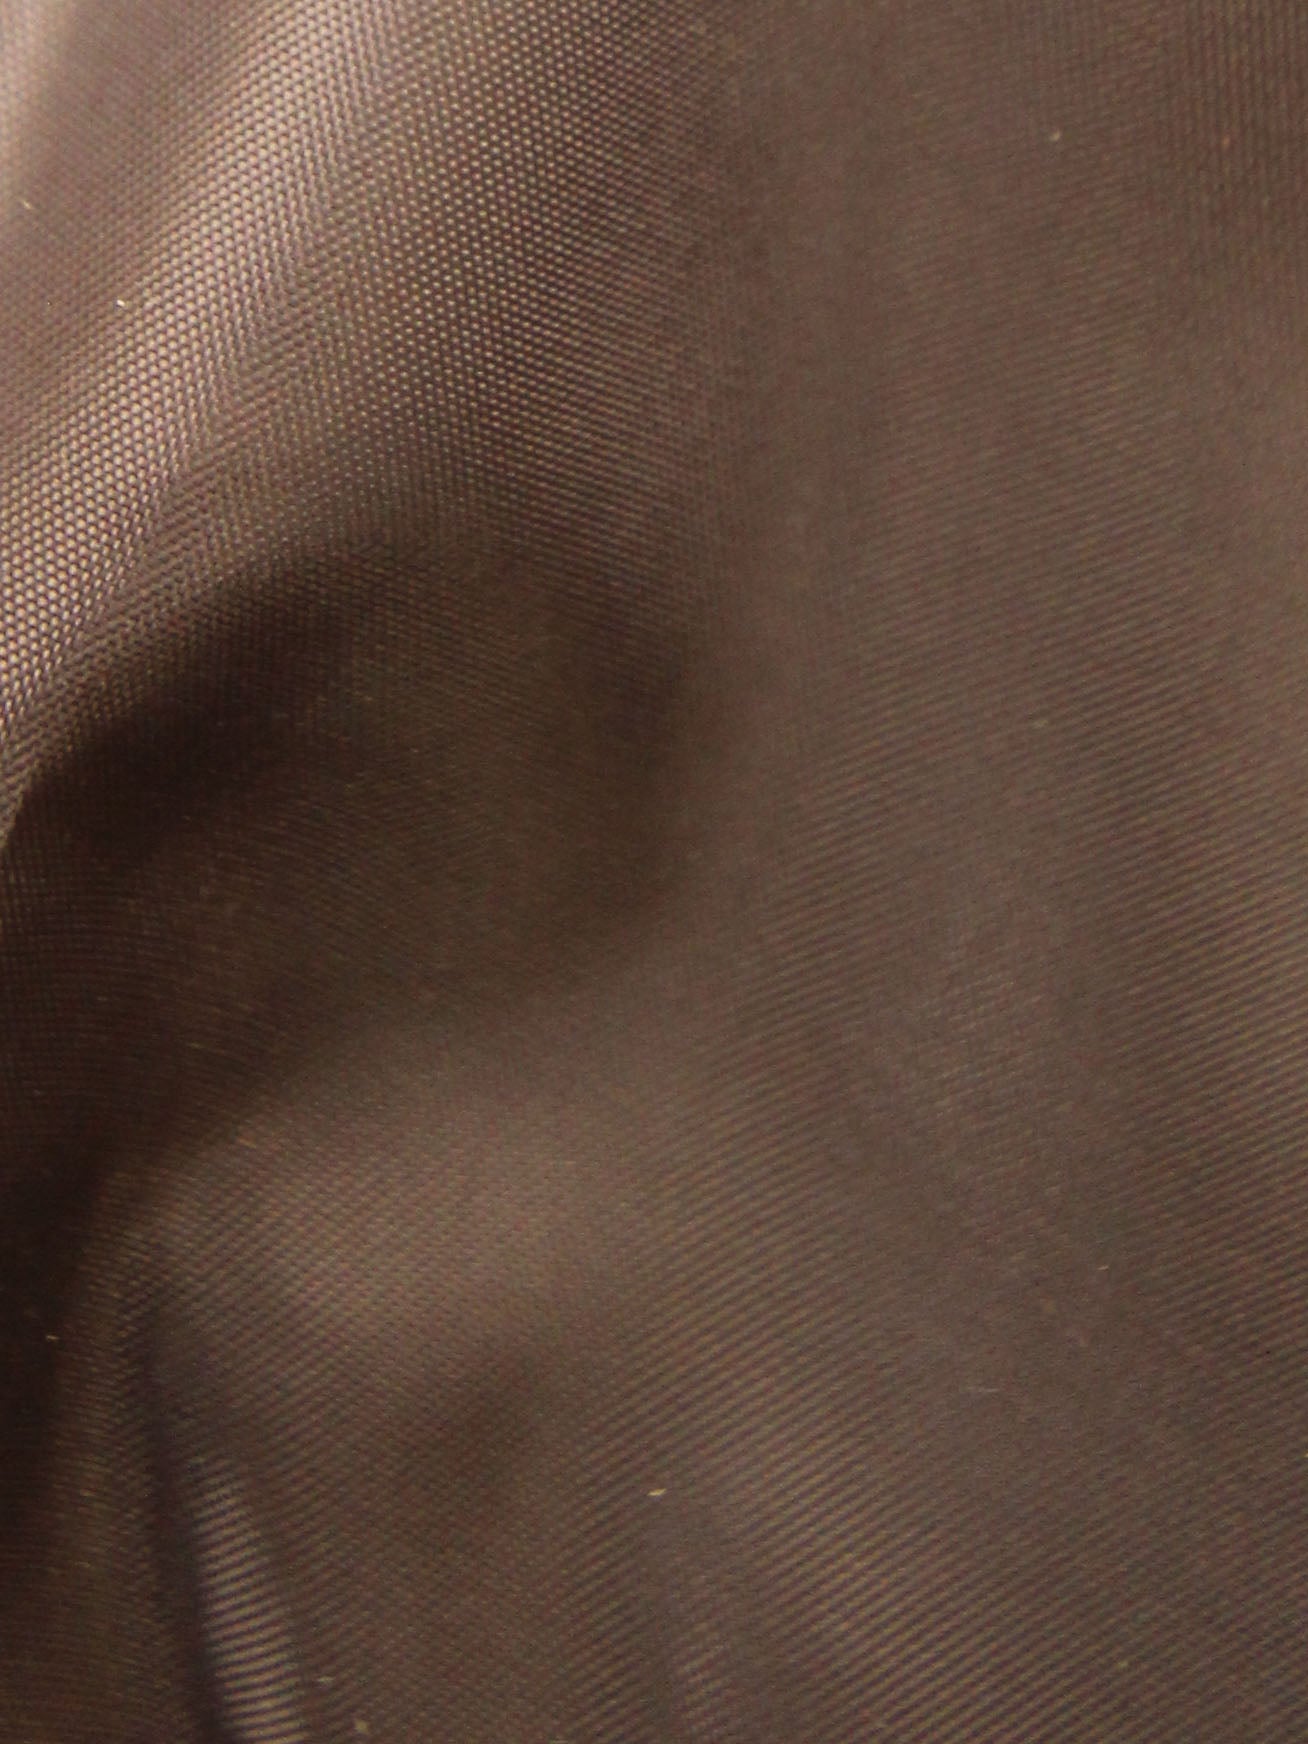 Doublure polyester anti-statique (148cm/58") - Eclipse (couleurs plus sombres)